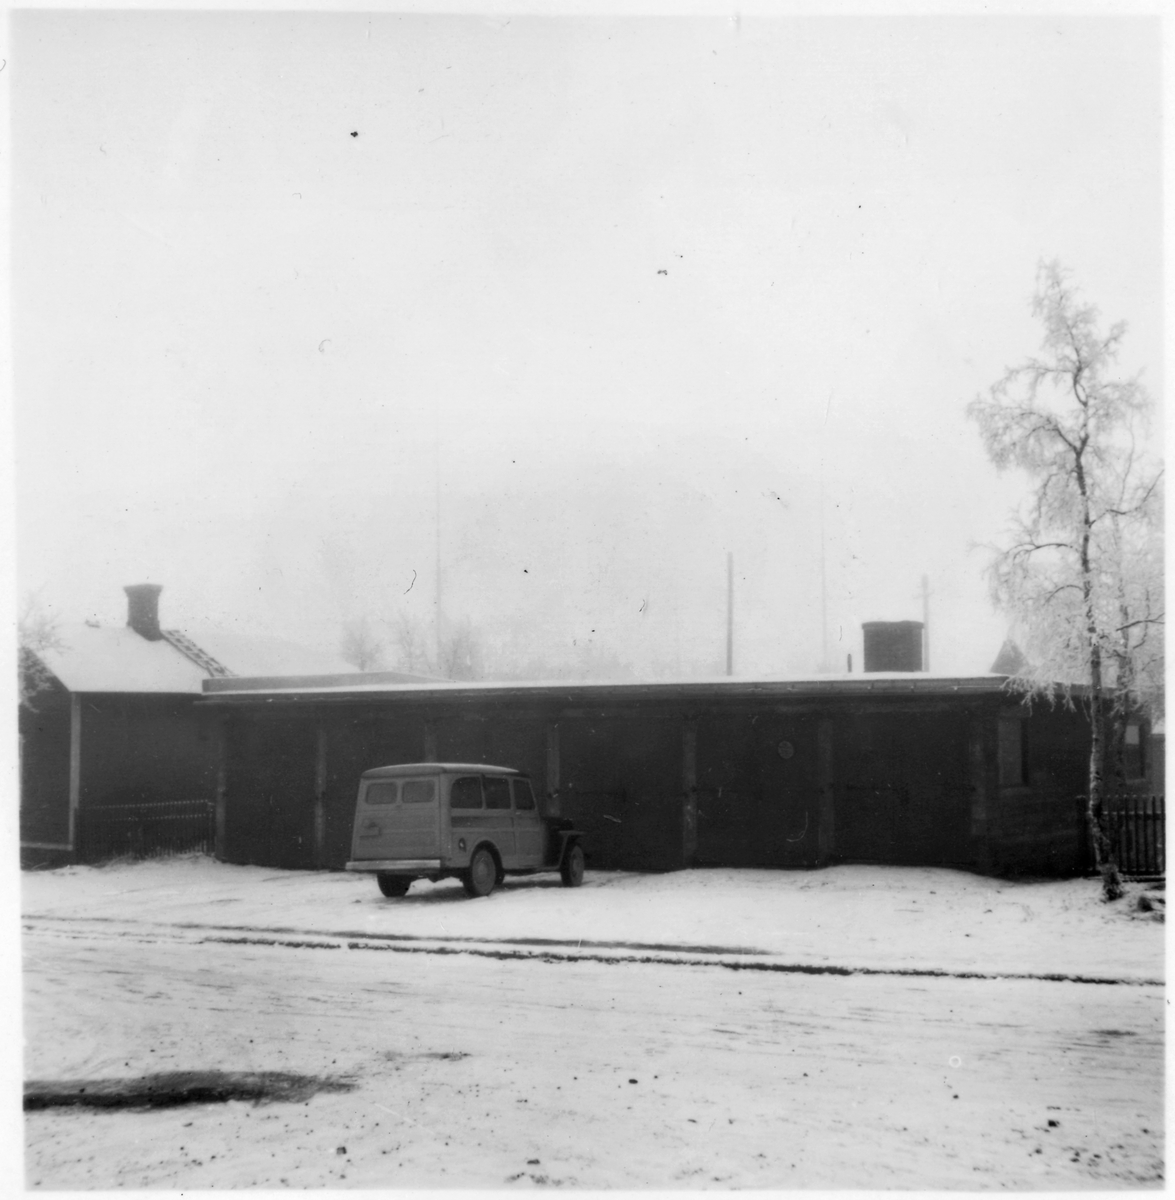 Vägstation BD14, Vittangi, filial Laxforsen. Garagebyggnad. Personbil framför byggnaden (vinterbild).